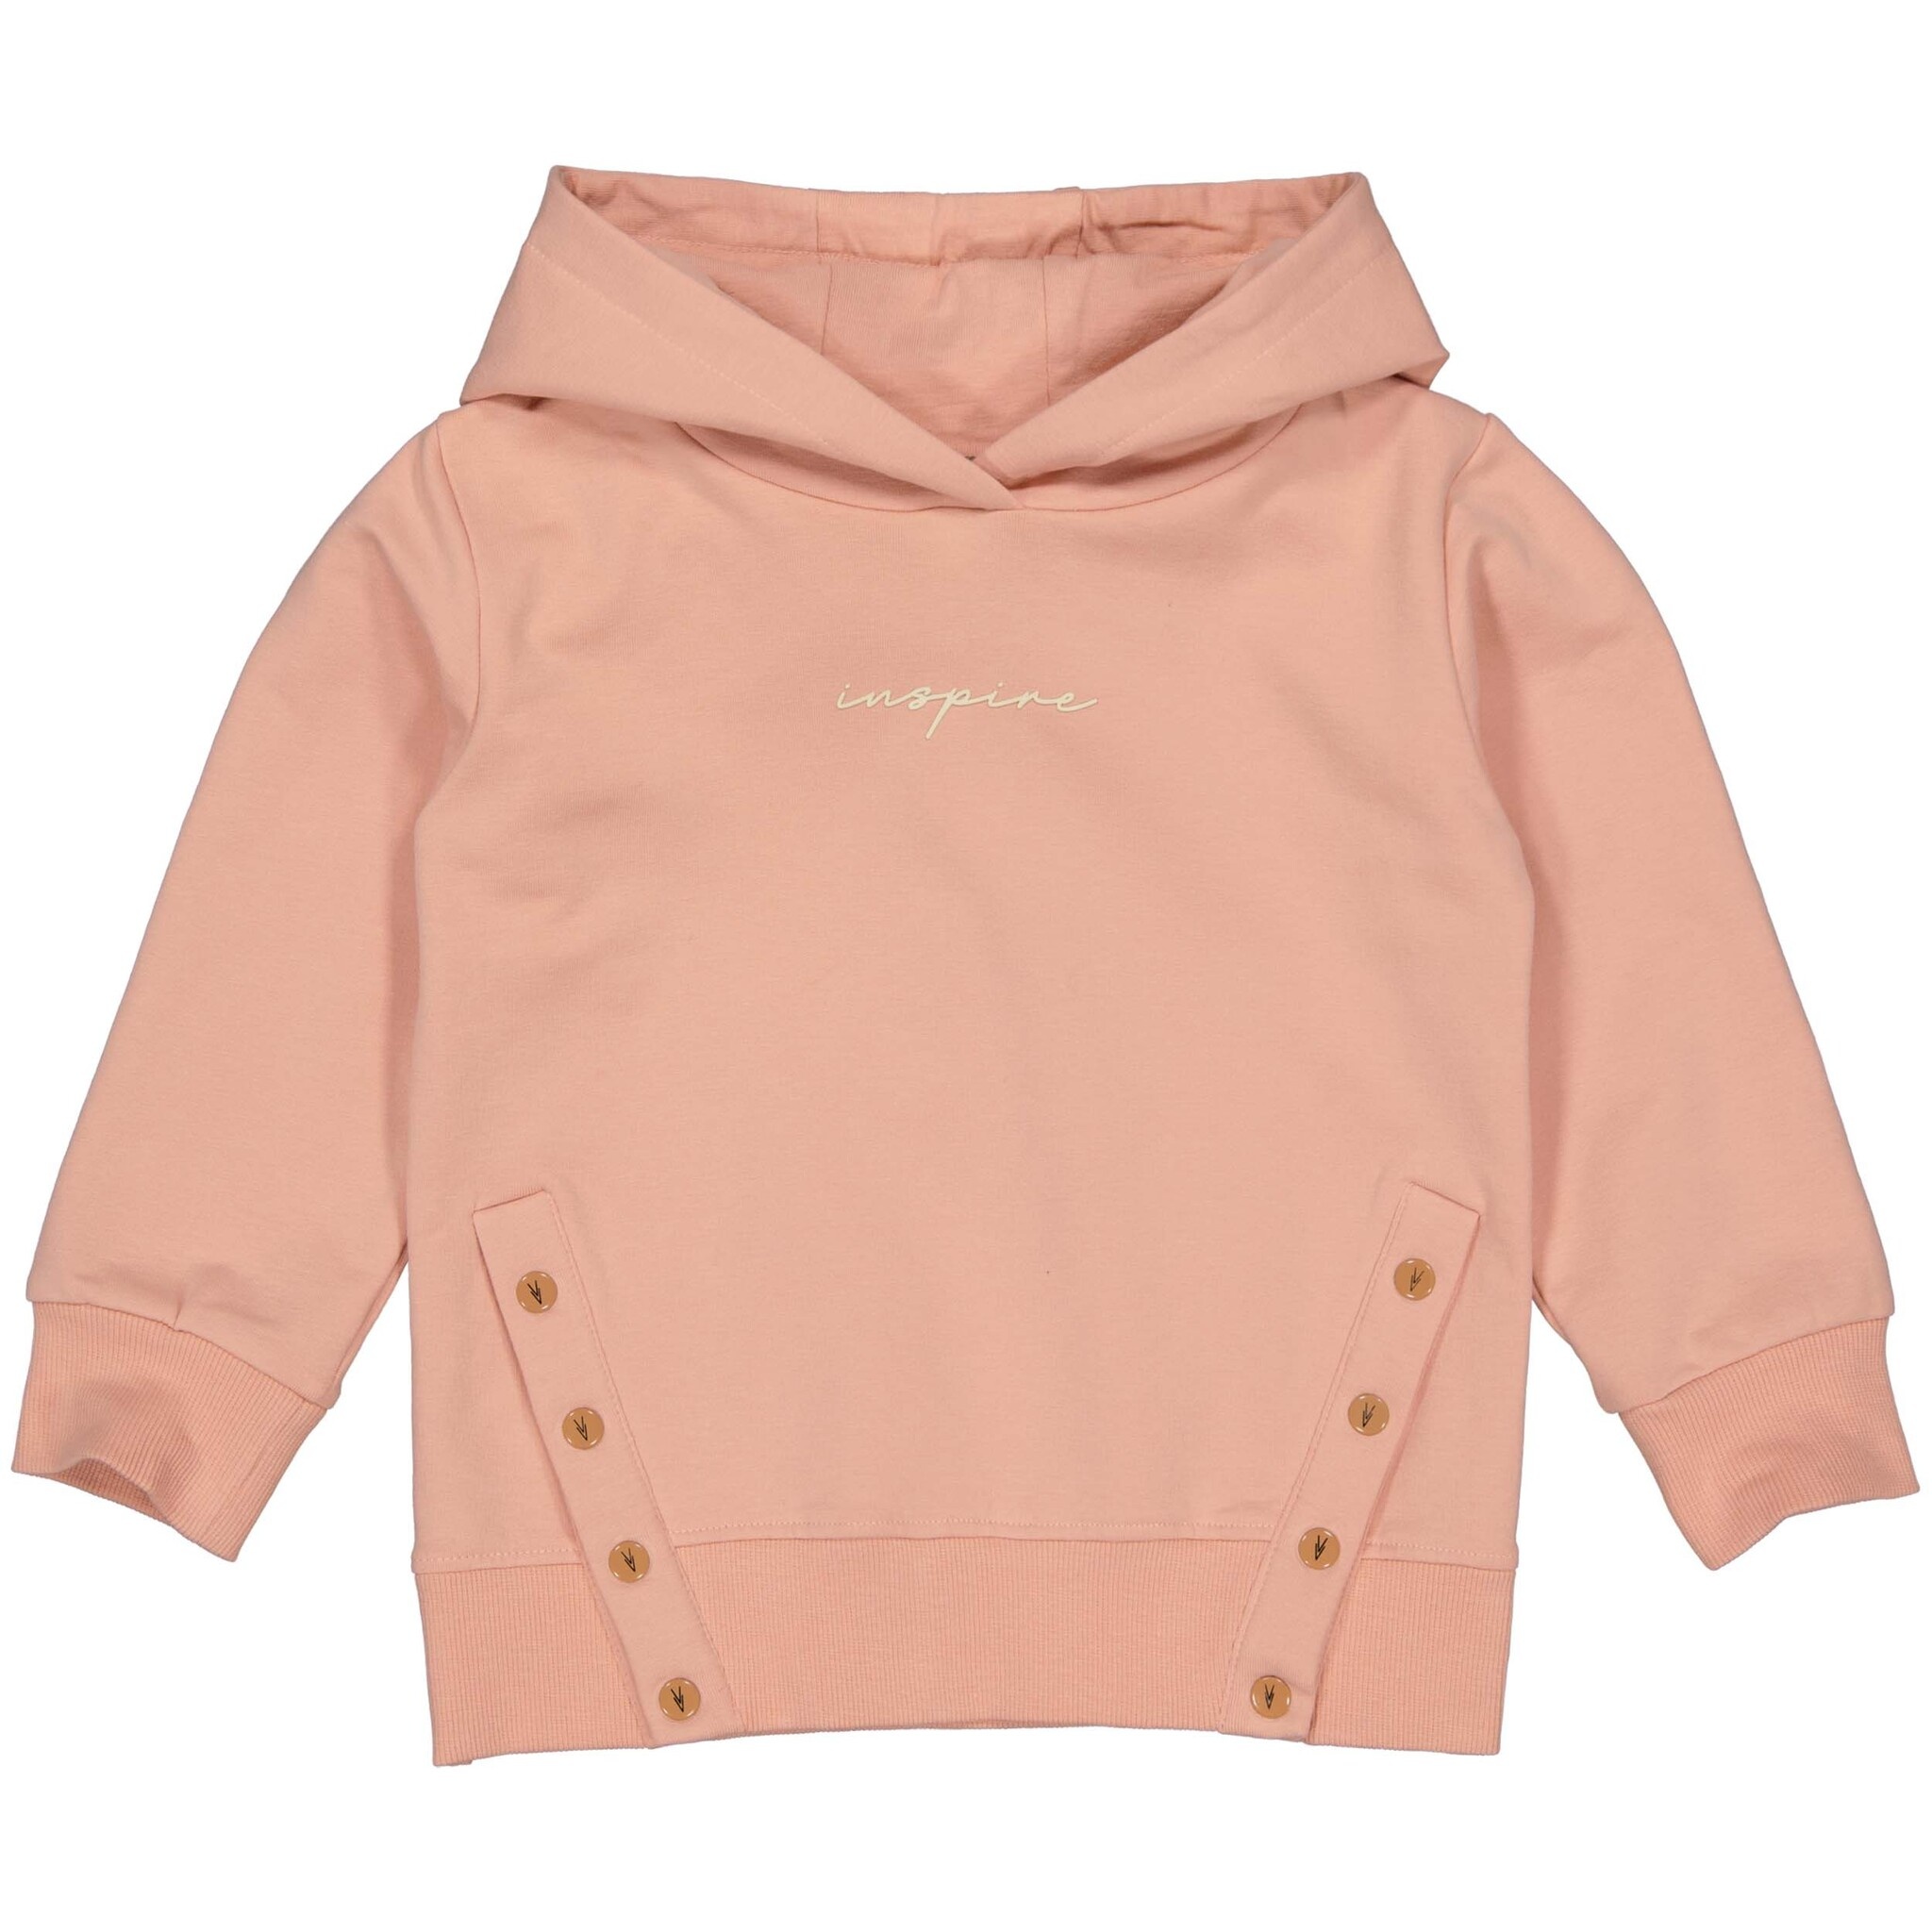 LEVV Little Meisjes sweater - Giada - Pastel roze